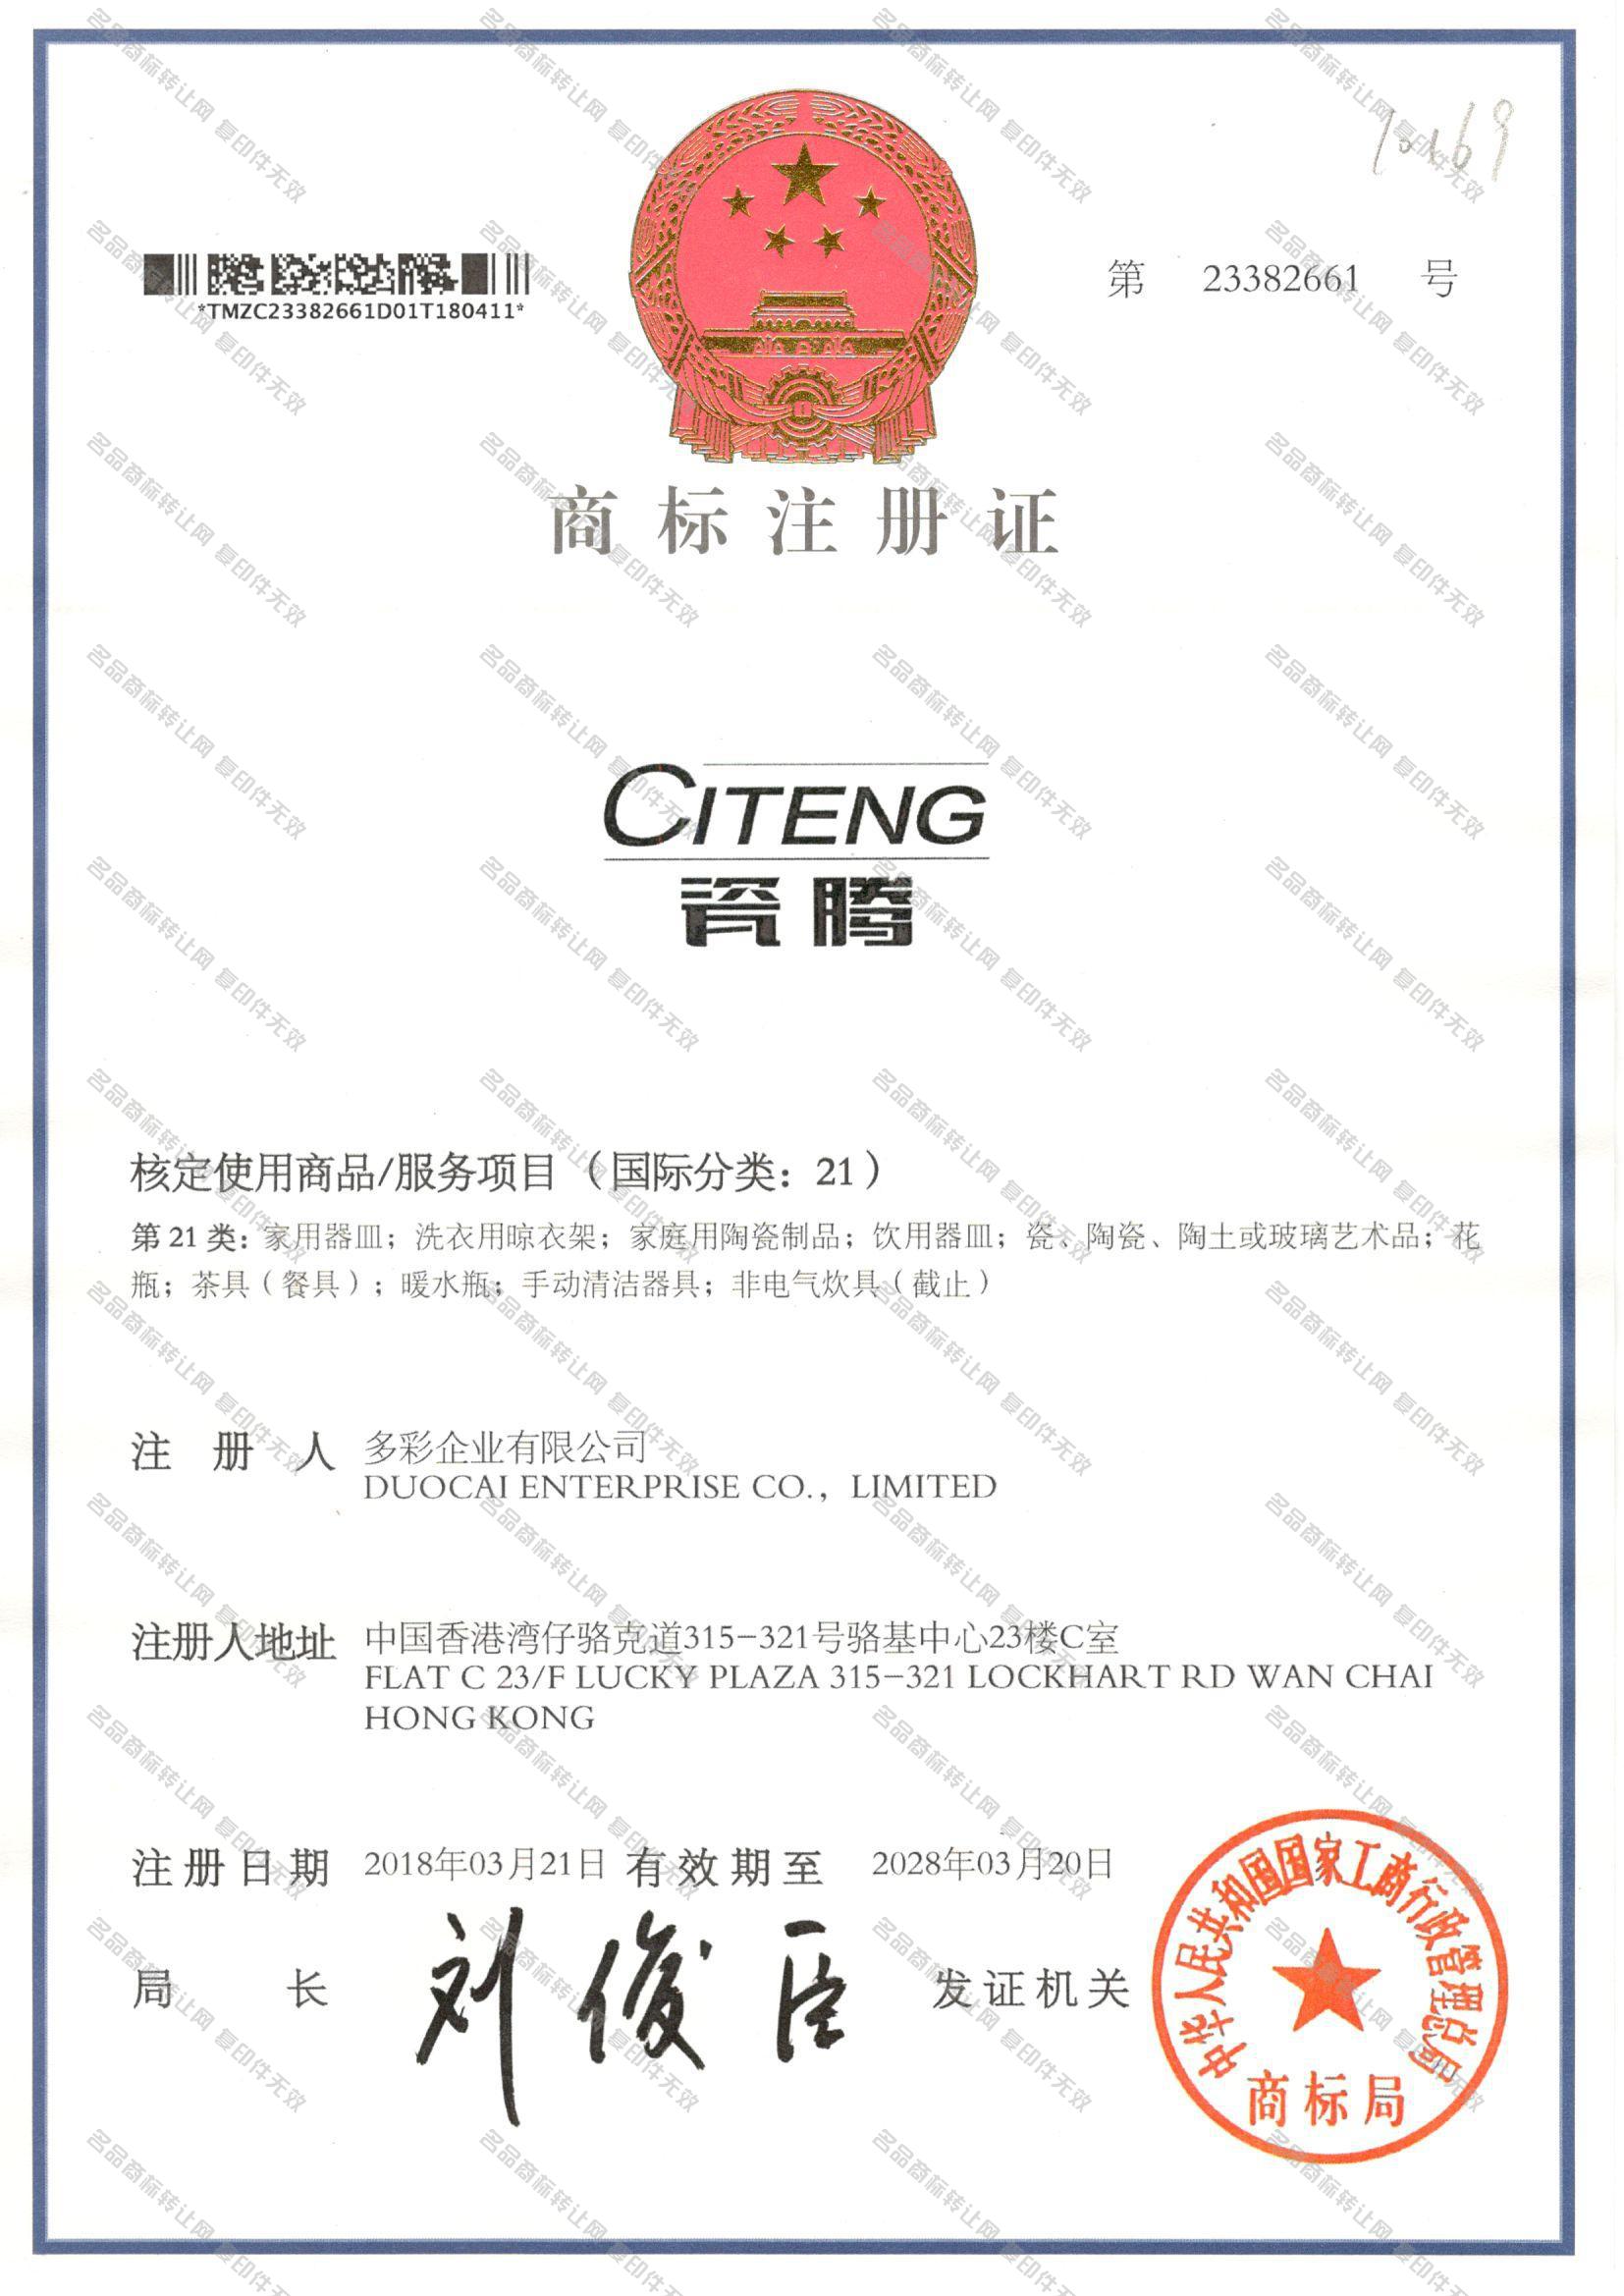 瓷腾 CITENG注册证